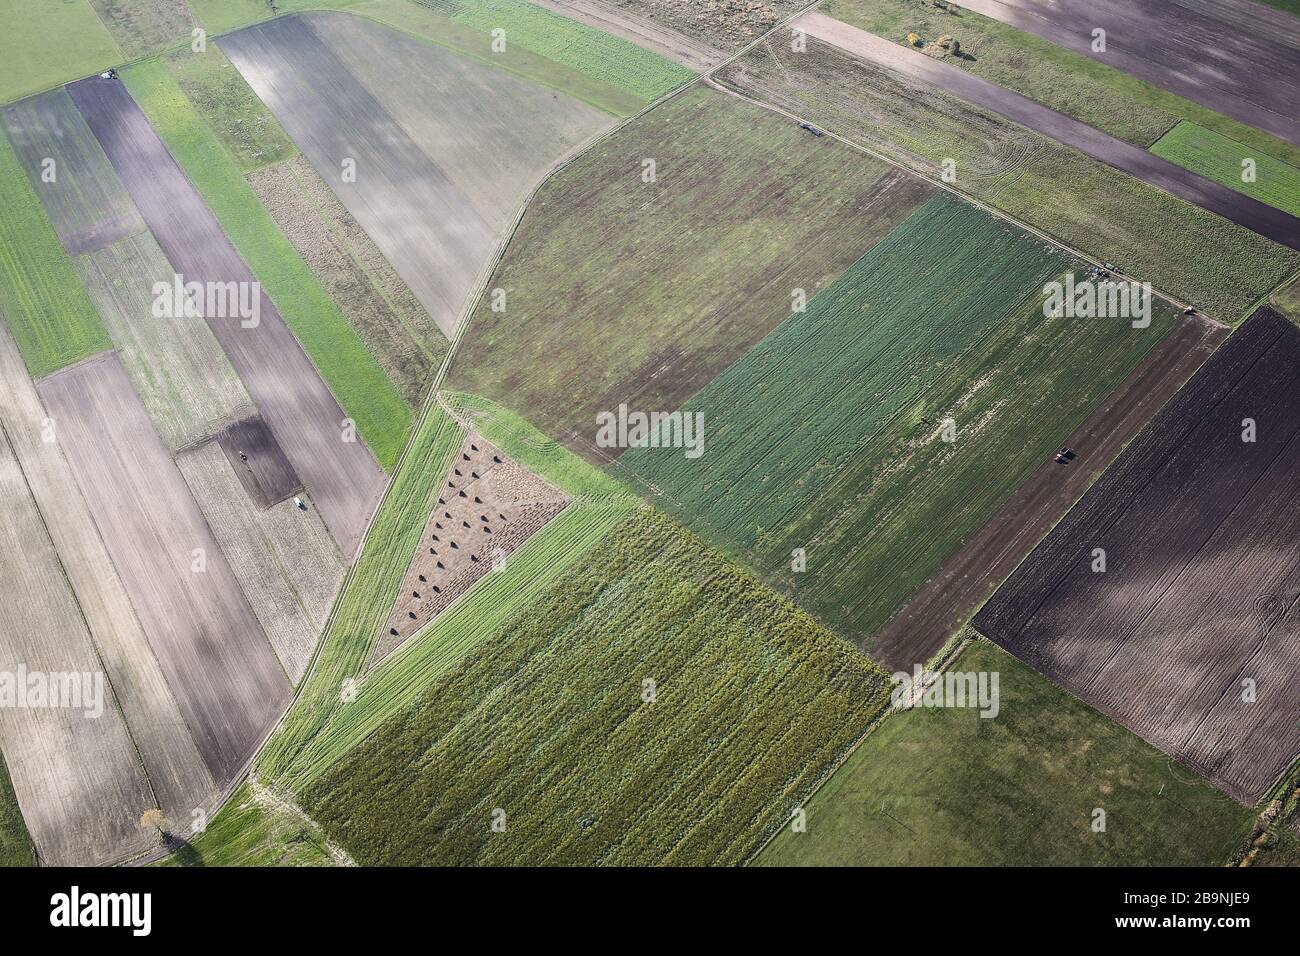 Vues aériennes de la vallée de Nida. Prés, marécages et zones humides visibles sur la photo. La rivière située en Pologne a beaucoup de méandres. Banque D'Images